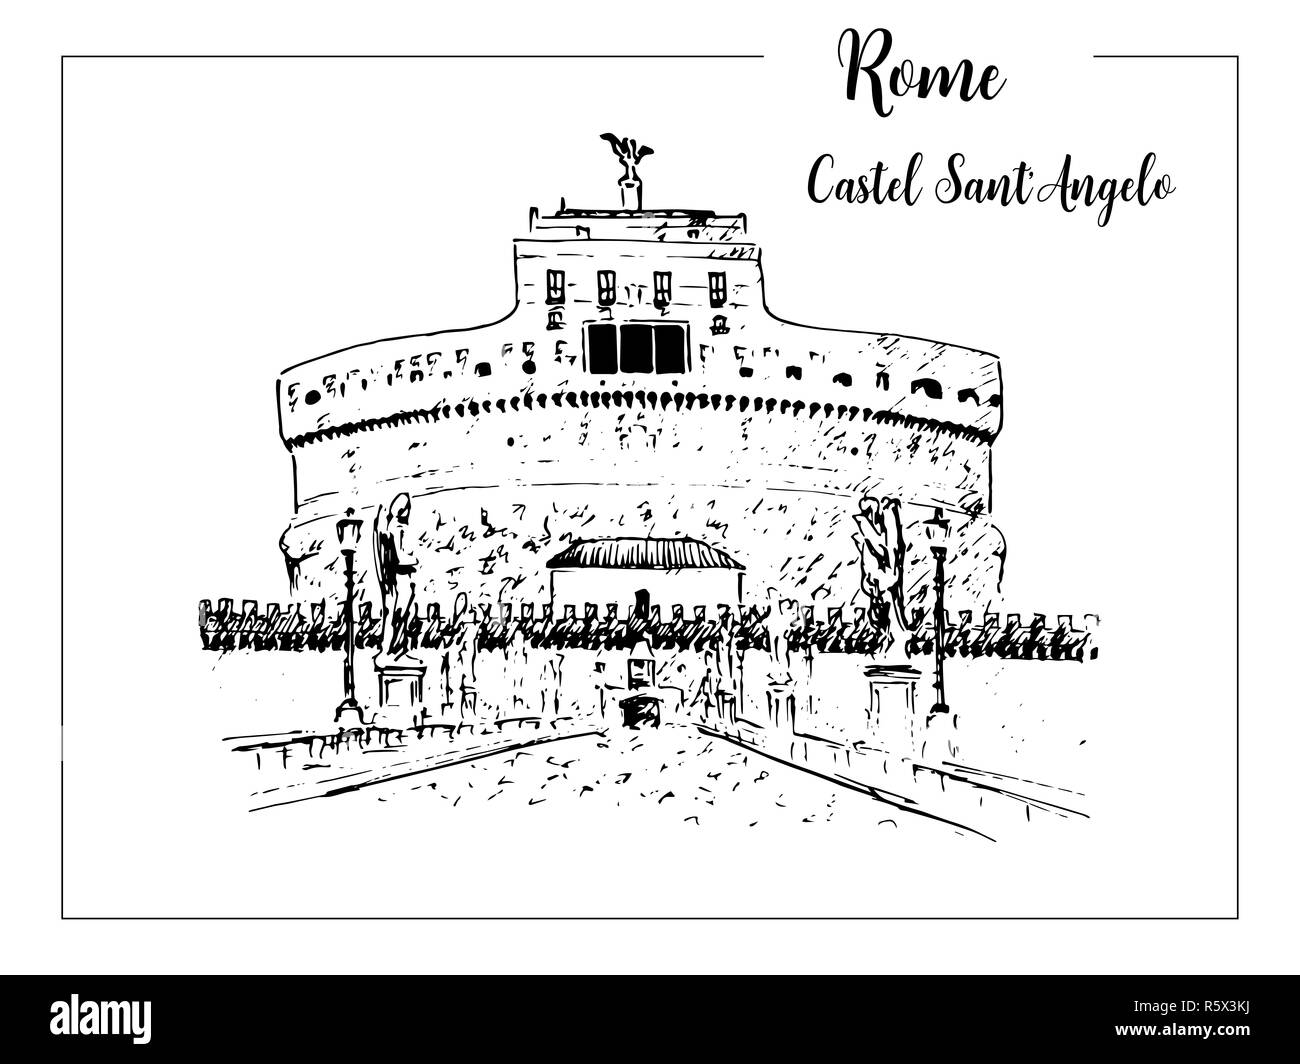 La ville de Rome. Castel Sant'Angelo d'horizon. symbole architectural. Belle illustration croquis vecteur dessiné à la main. L'Italie. Banque D'Images